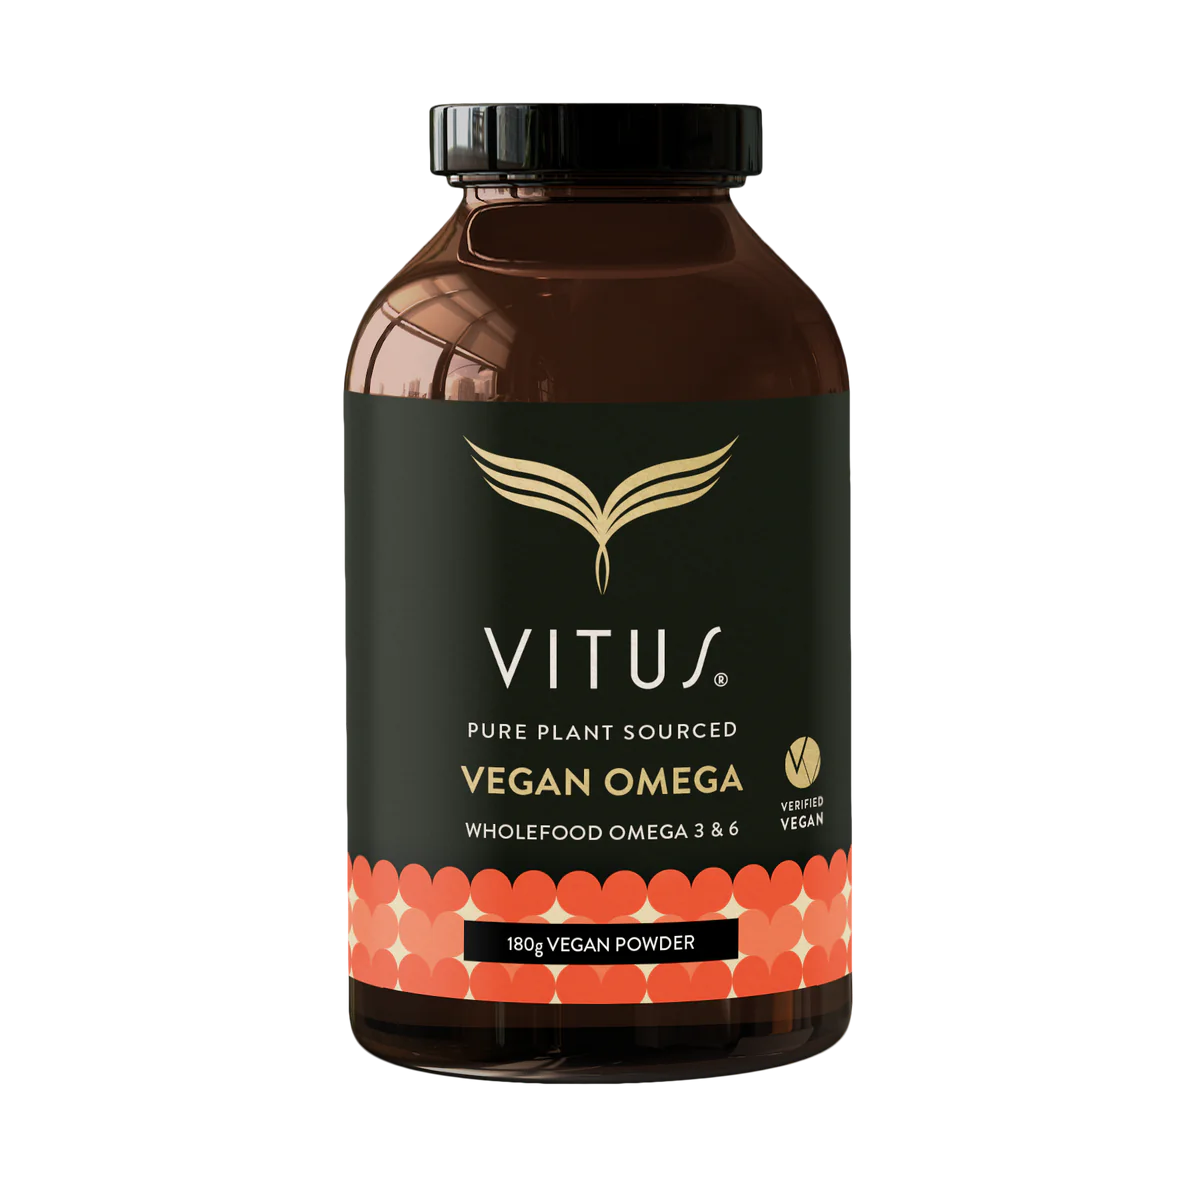 vegan omega 180G powder